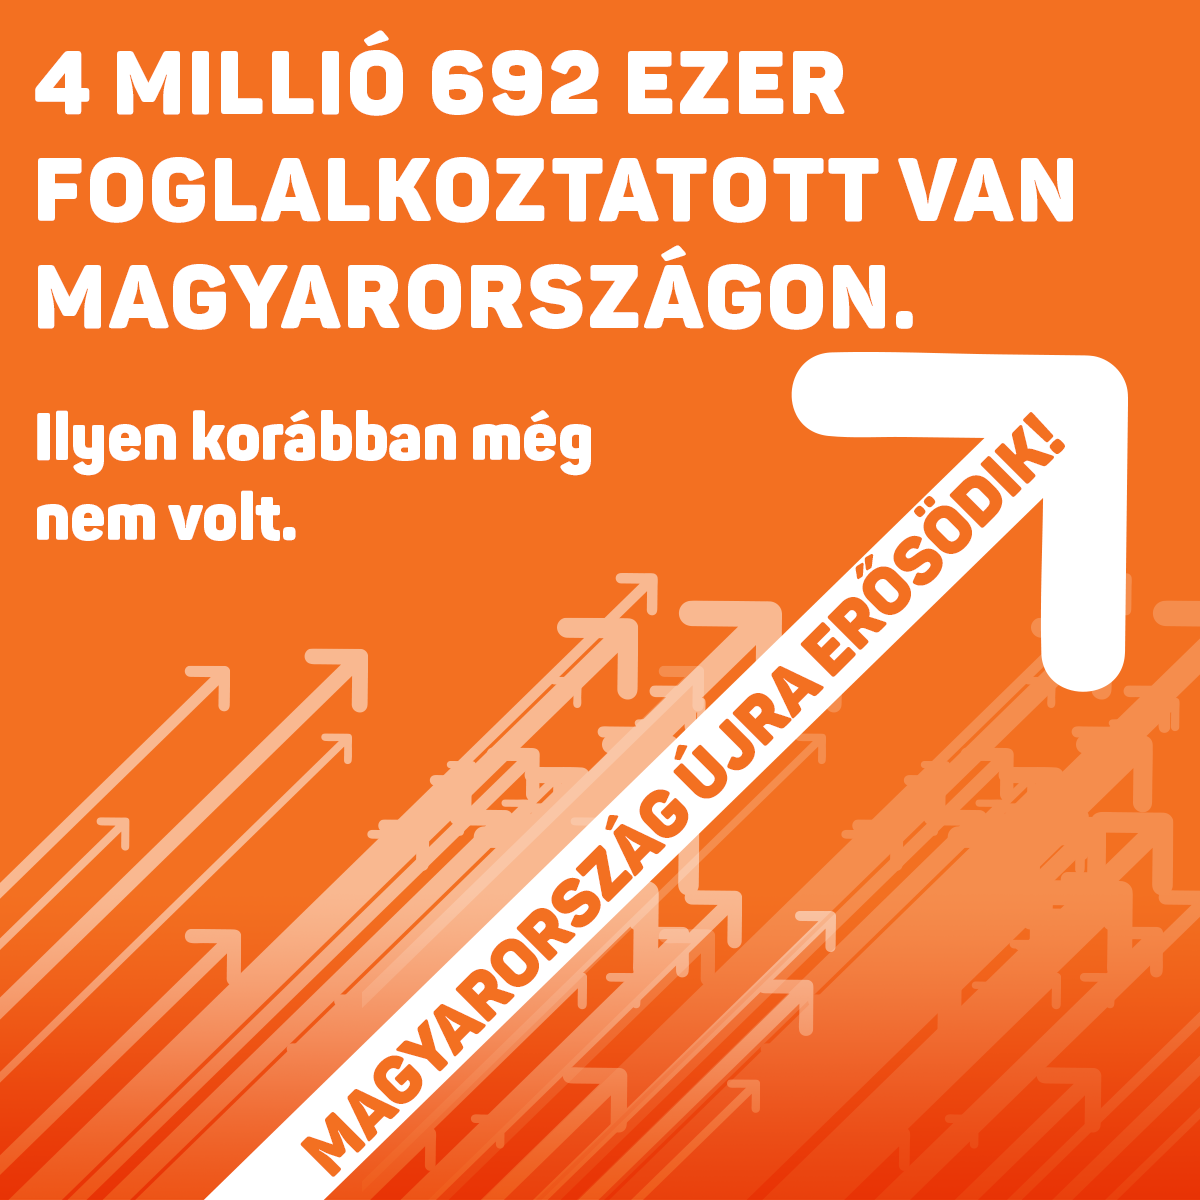 4 millió 692 ezer foglalkoztatott van Magyarországon. Ilyen korábban még nem volt.﻿ Magyarország újra erősödik!